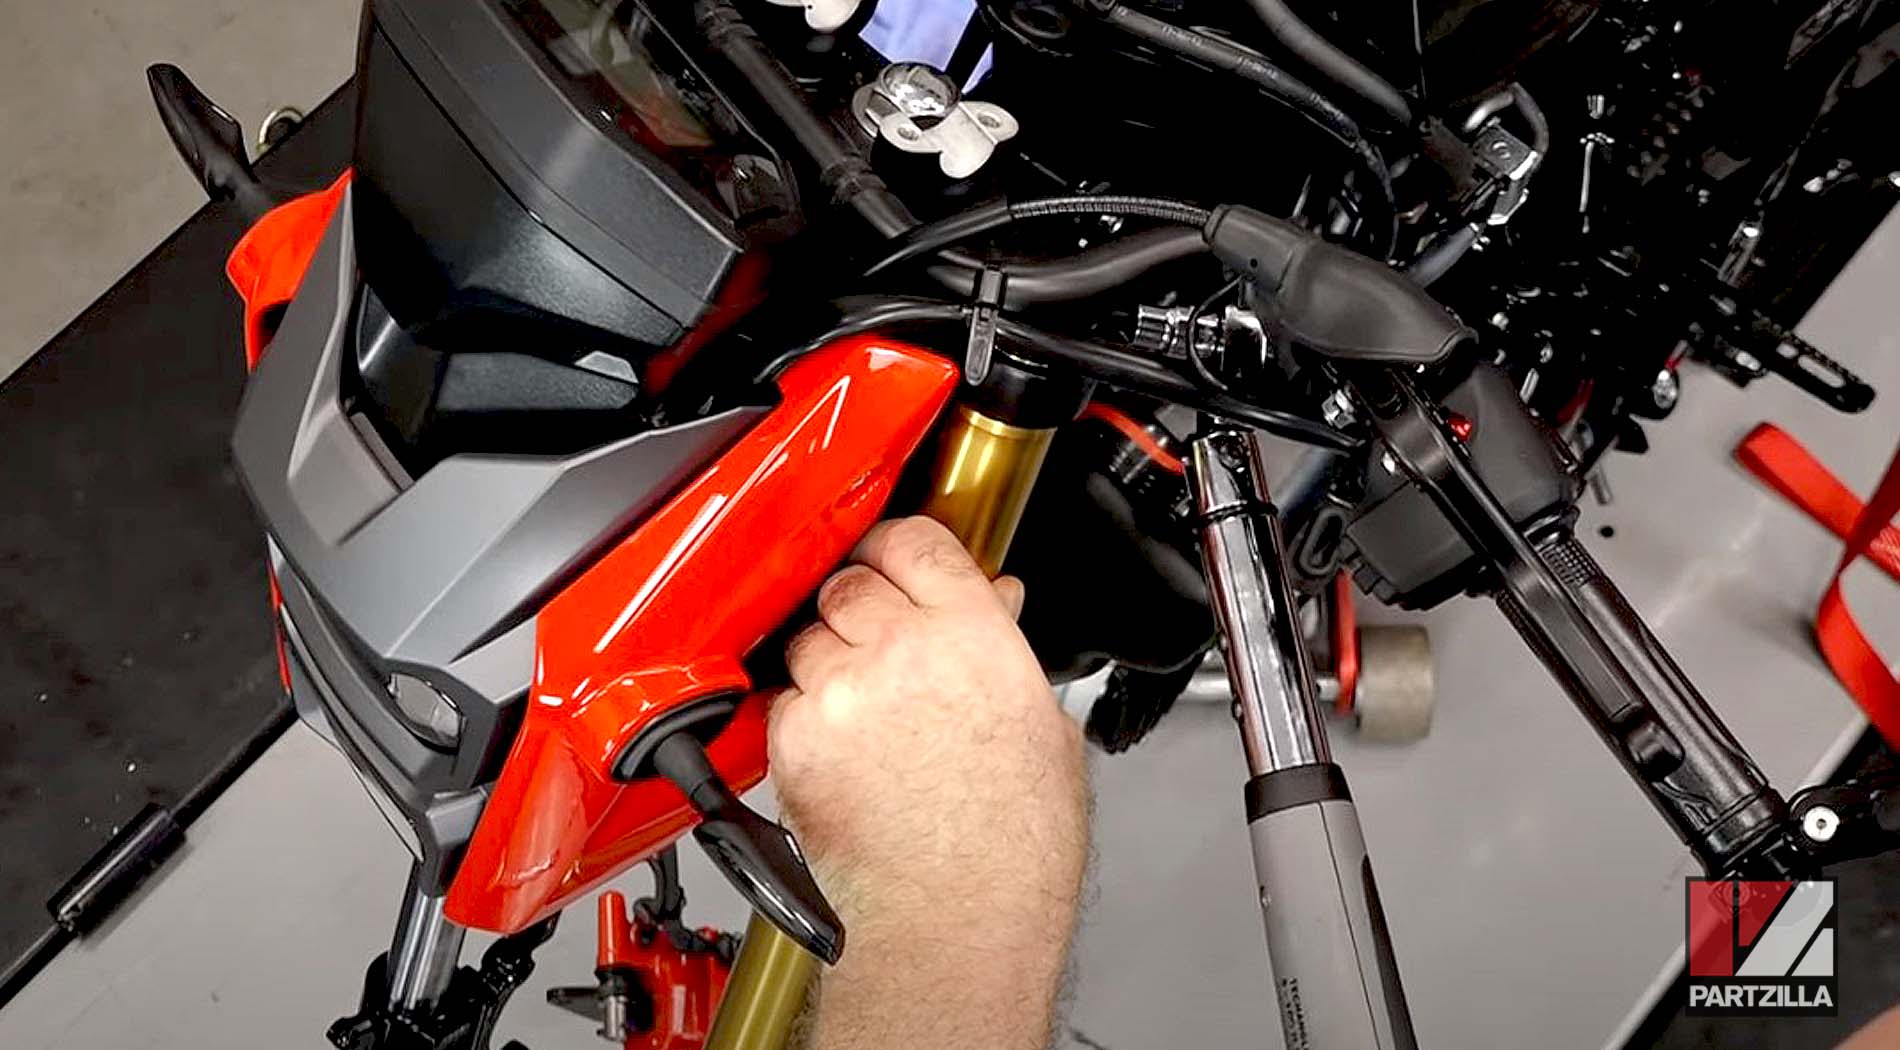 Honda Grom ABS 125 aftermarket fork kit upgrade